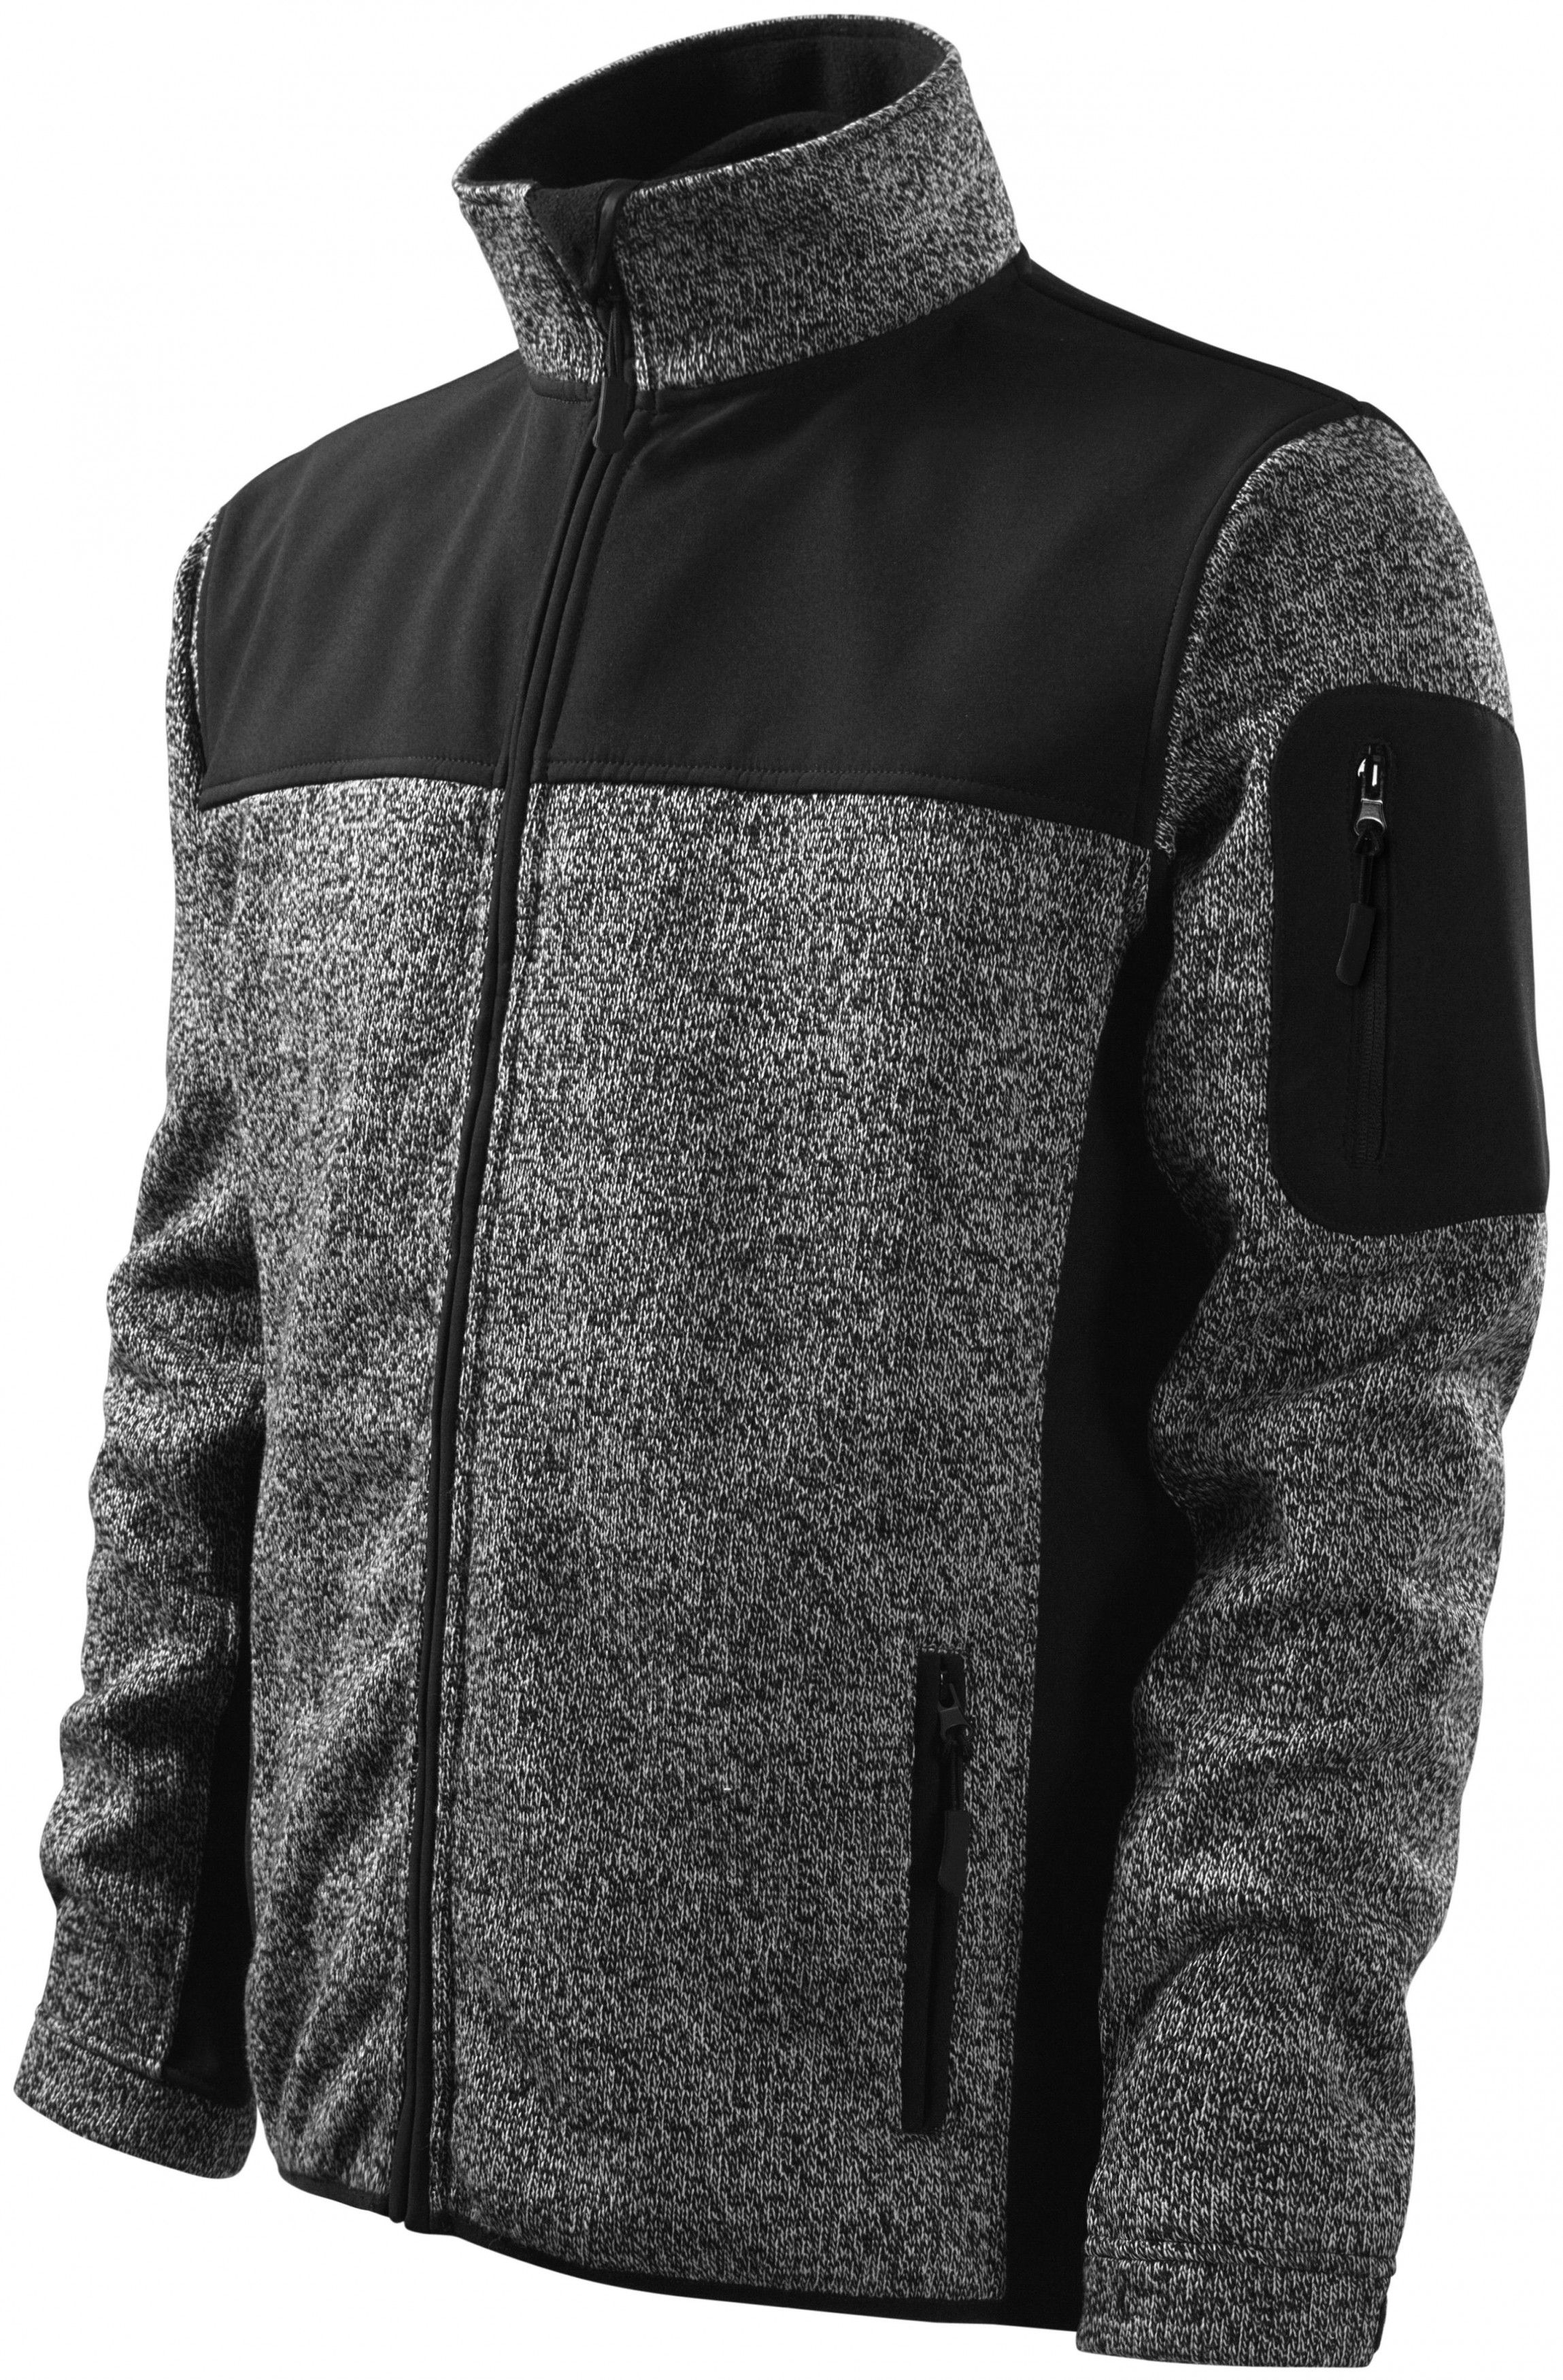 Pánska bunda voľnočasová, knit gray, XL